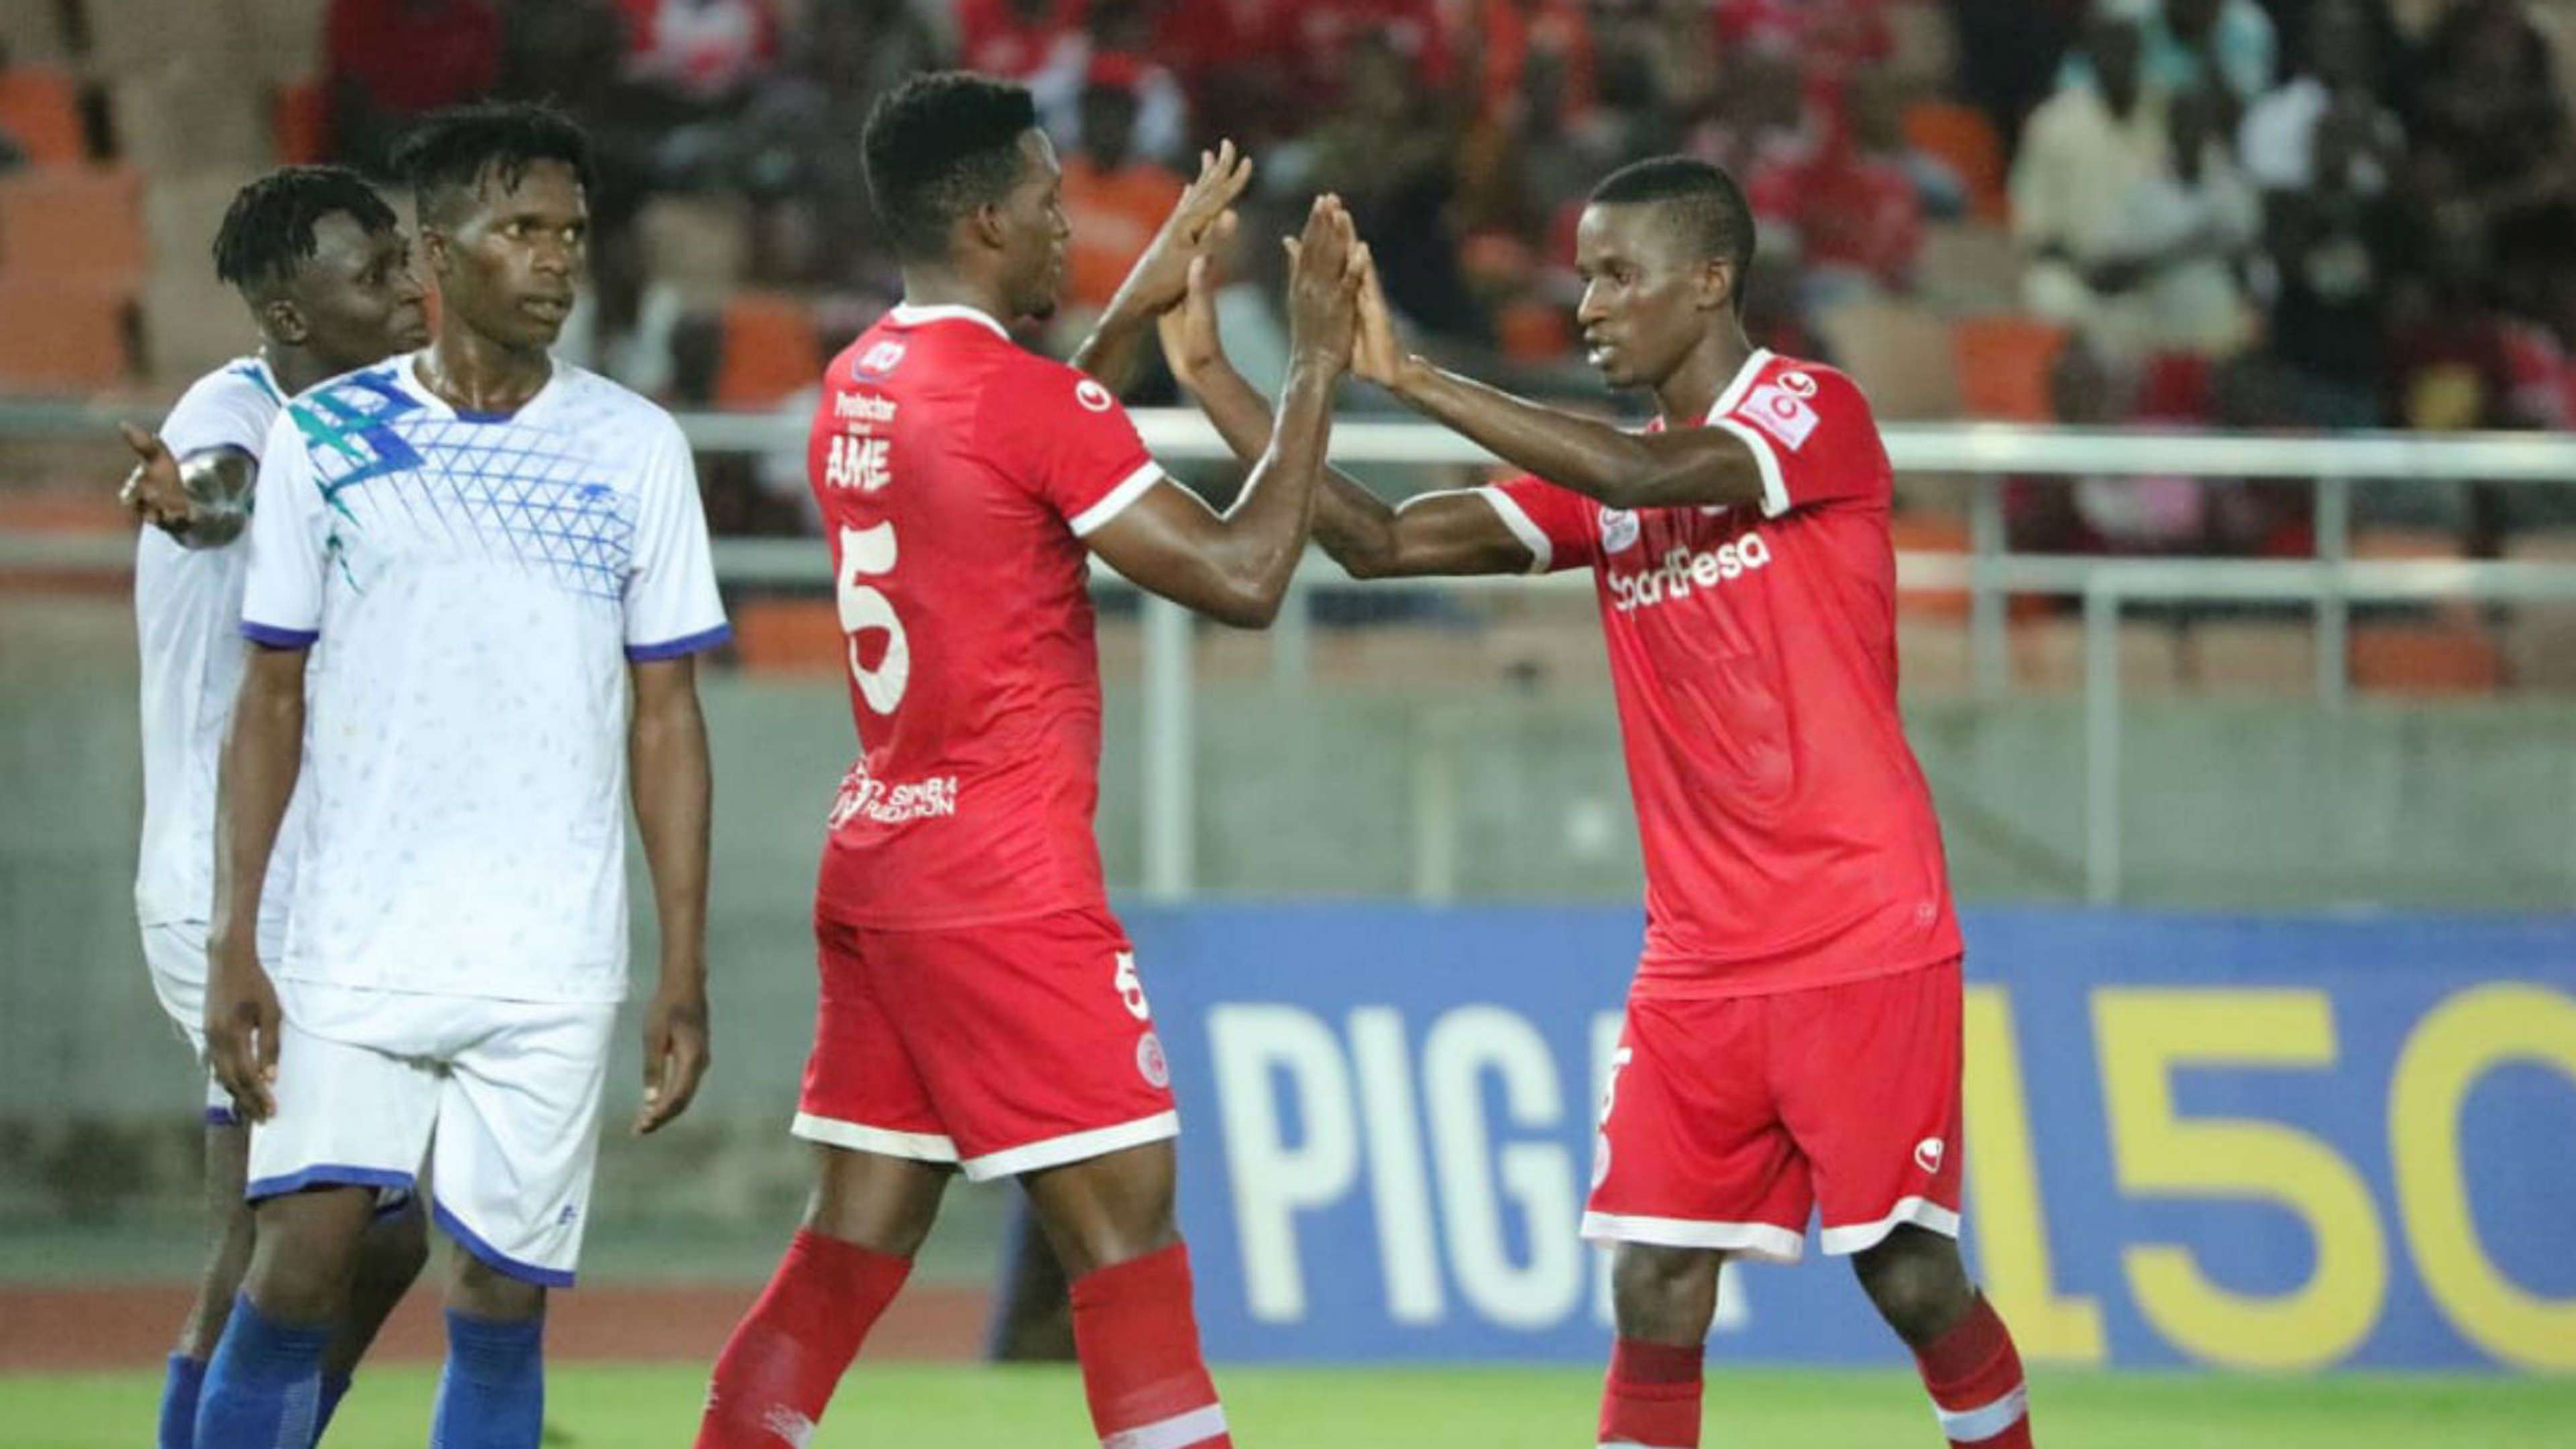 Ibrahim Ame and Chris Mugalu of Simba vs Maji Maji FC.